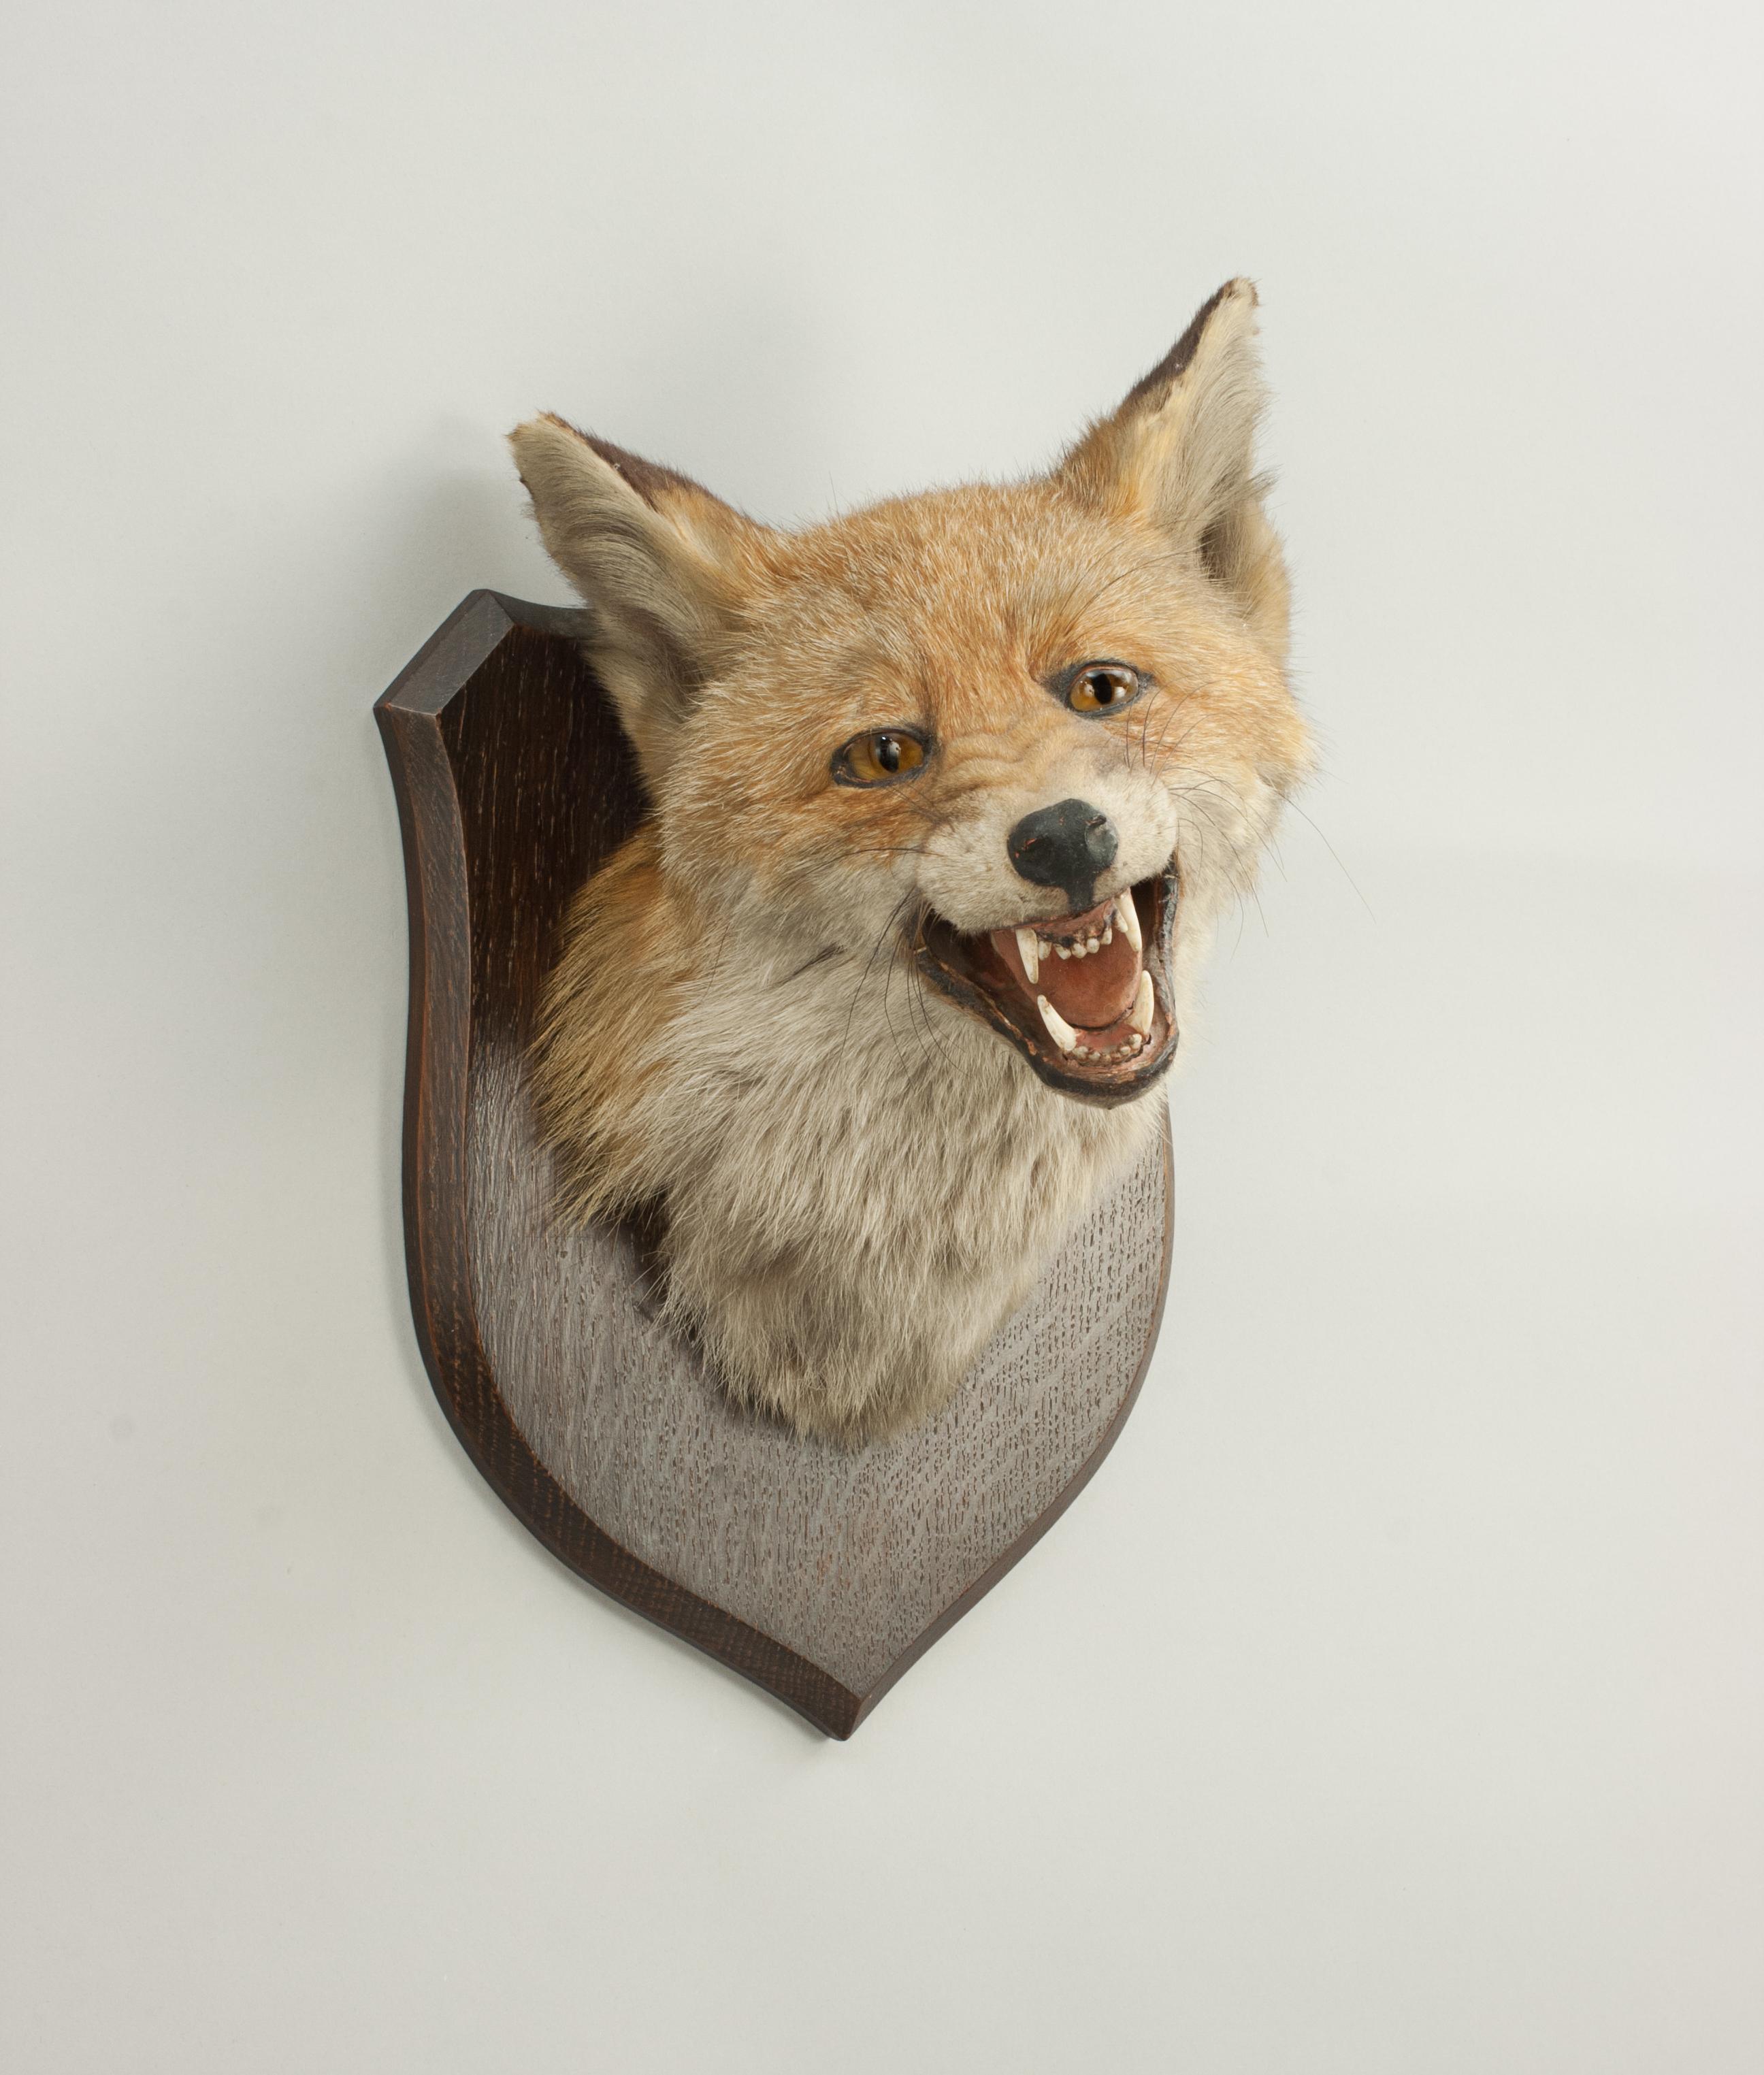 Alte Fuchsmaske von Peter Spicer.
Diese präparierte Fuchsmaske mit Fuchskopf ist auf einem hochwertigen Eichenschild montiert, das auf der Rückseite mit dem Aufdruck 